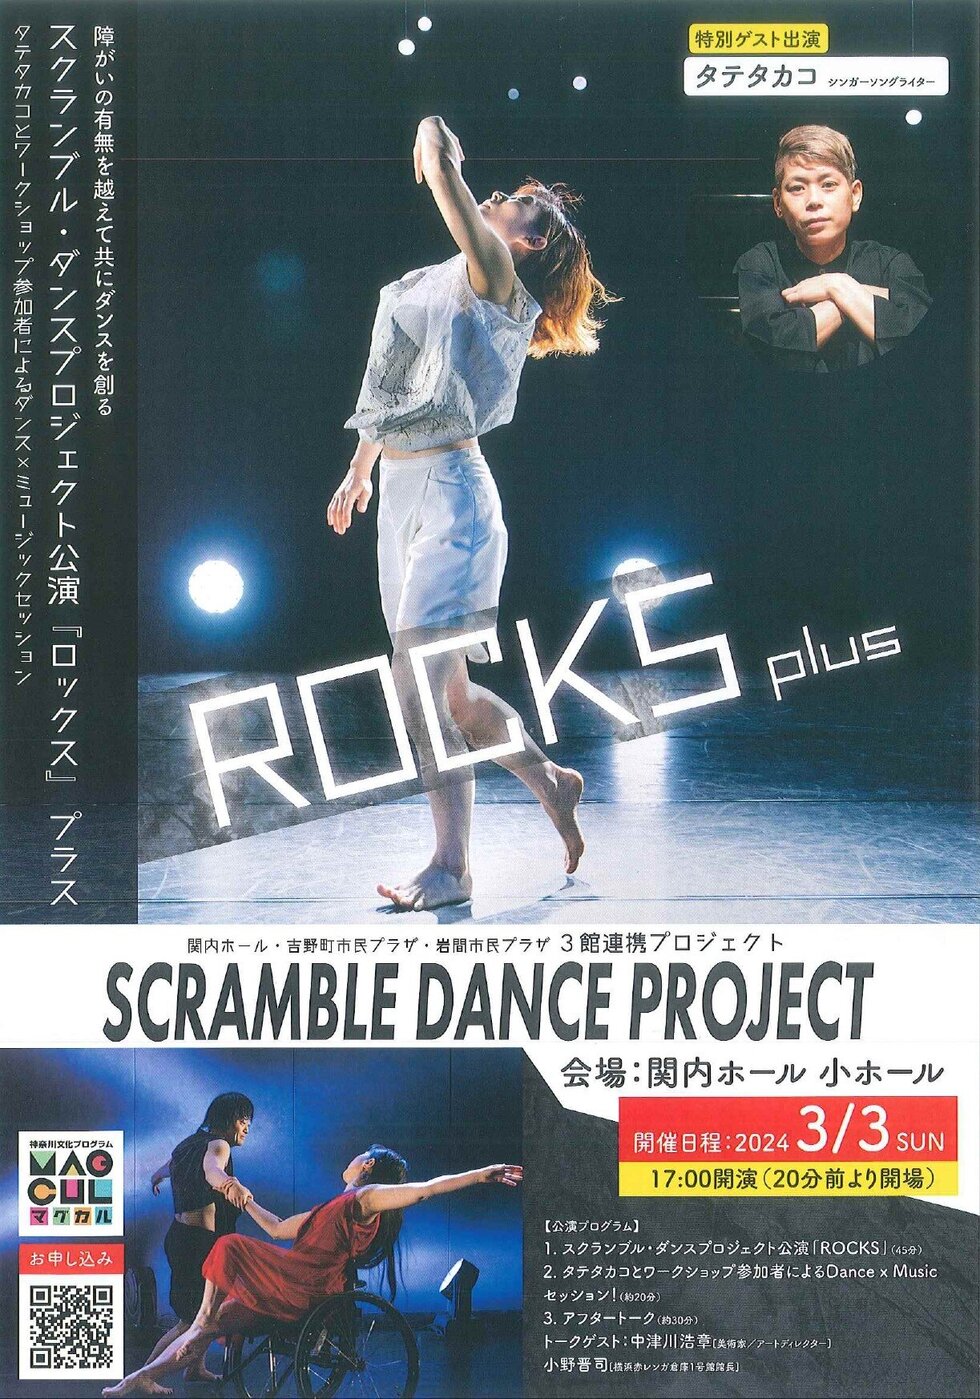 関内ホール・吉野町市民プラザ・岩間市民プラザ ３館連携プロジェクトSCRAMBLE DANCE PROJECTの写真